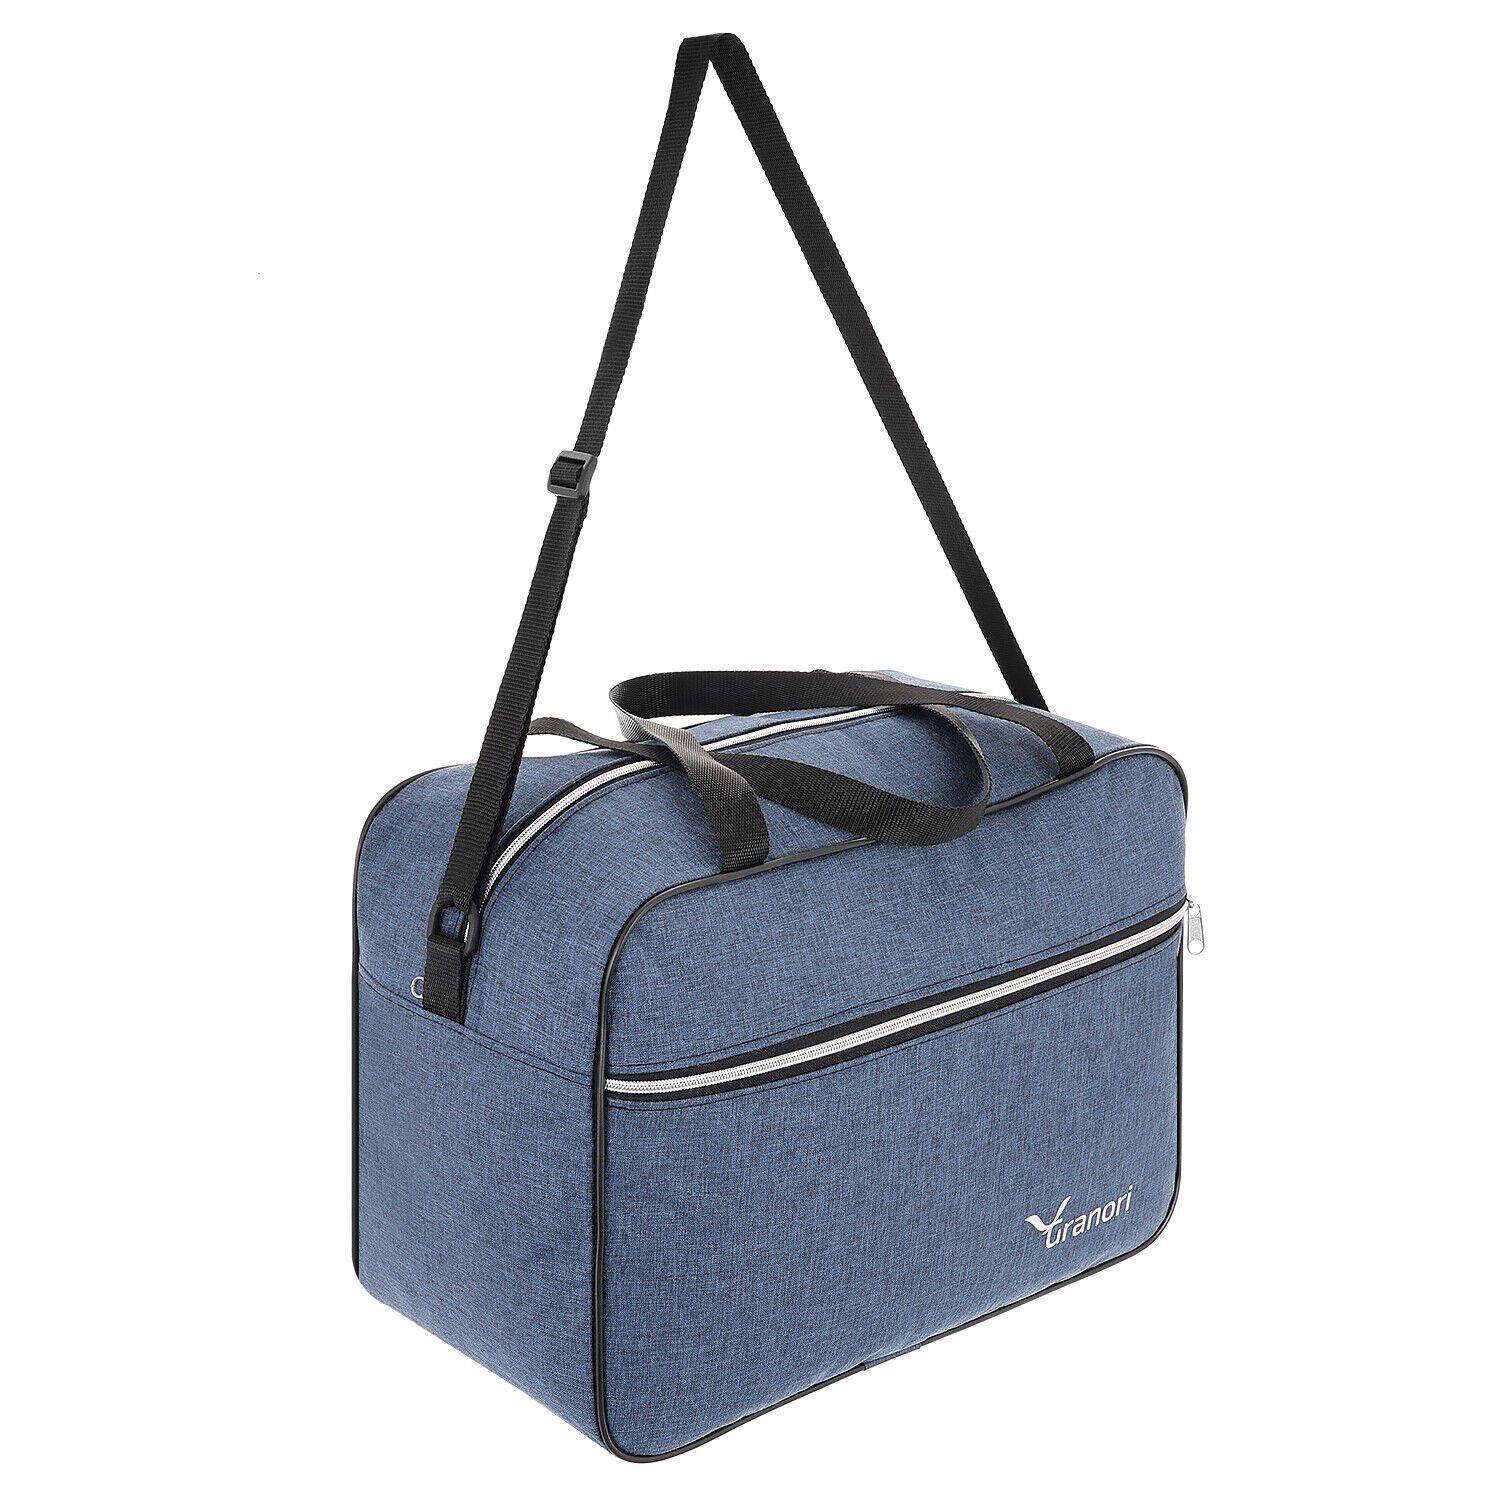 Granori Reisetasche 40x30x20 cm leichtes Aufsteckfunktion, l mit Flugzeug und geräumigem verstellbarem Hauptfach Blau mit Schultergurt 24 platzsparend, Handgepäck